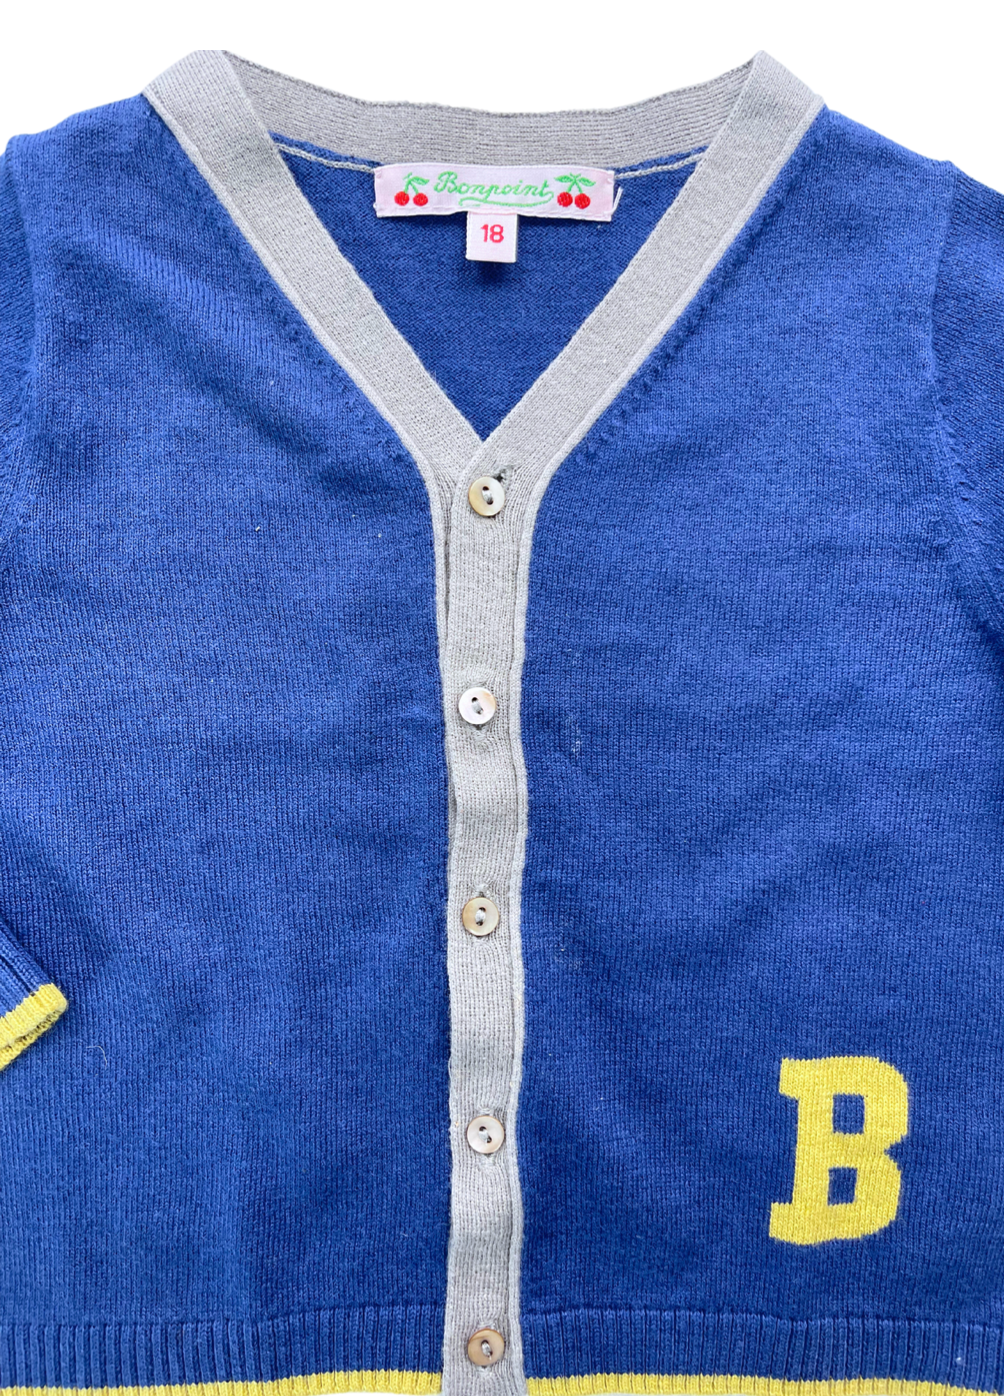 BONPOINT - Cardigan bleu « B » - 18 mois